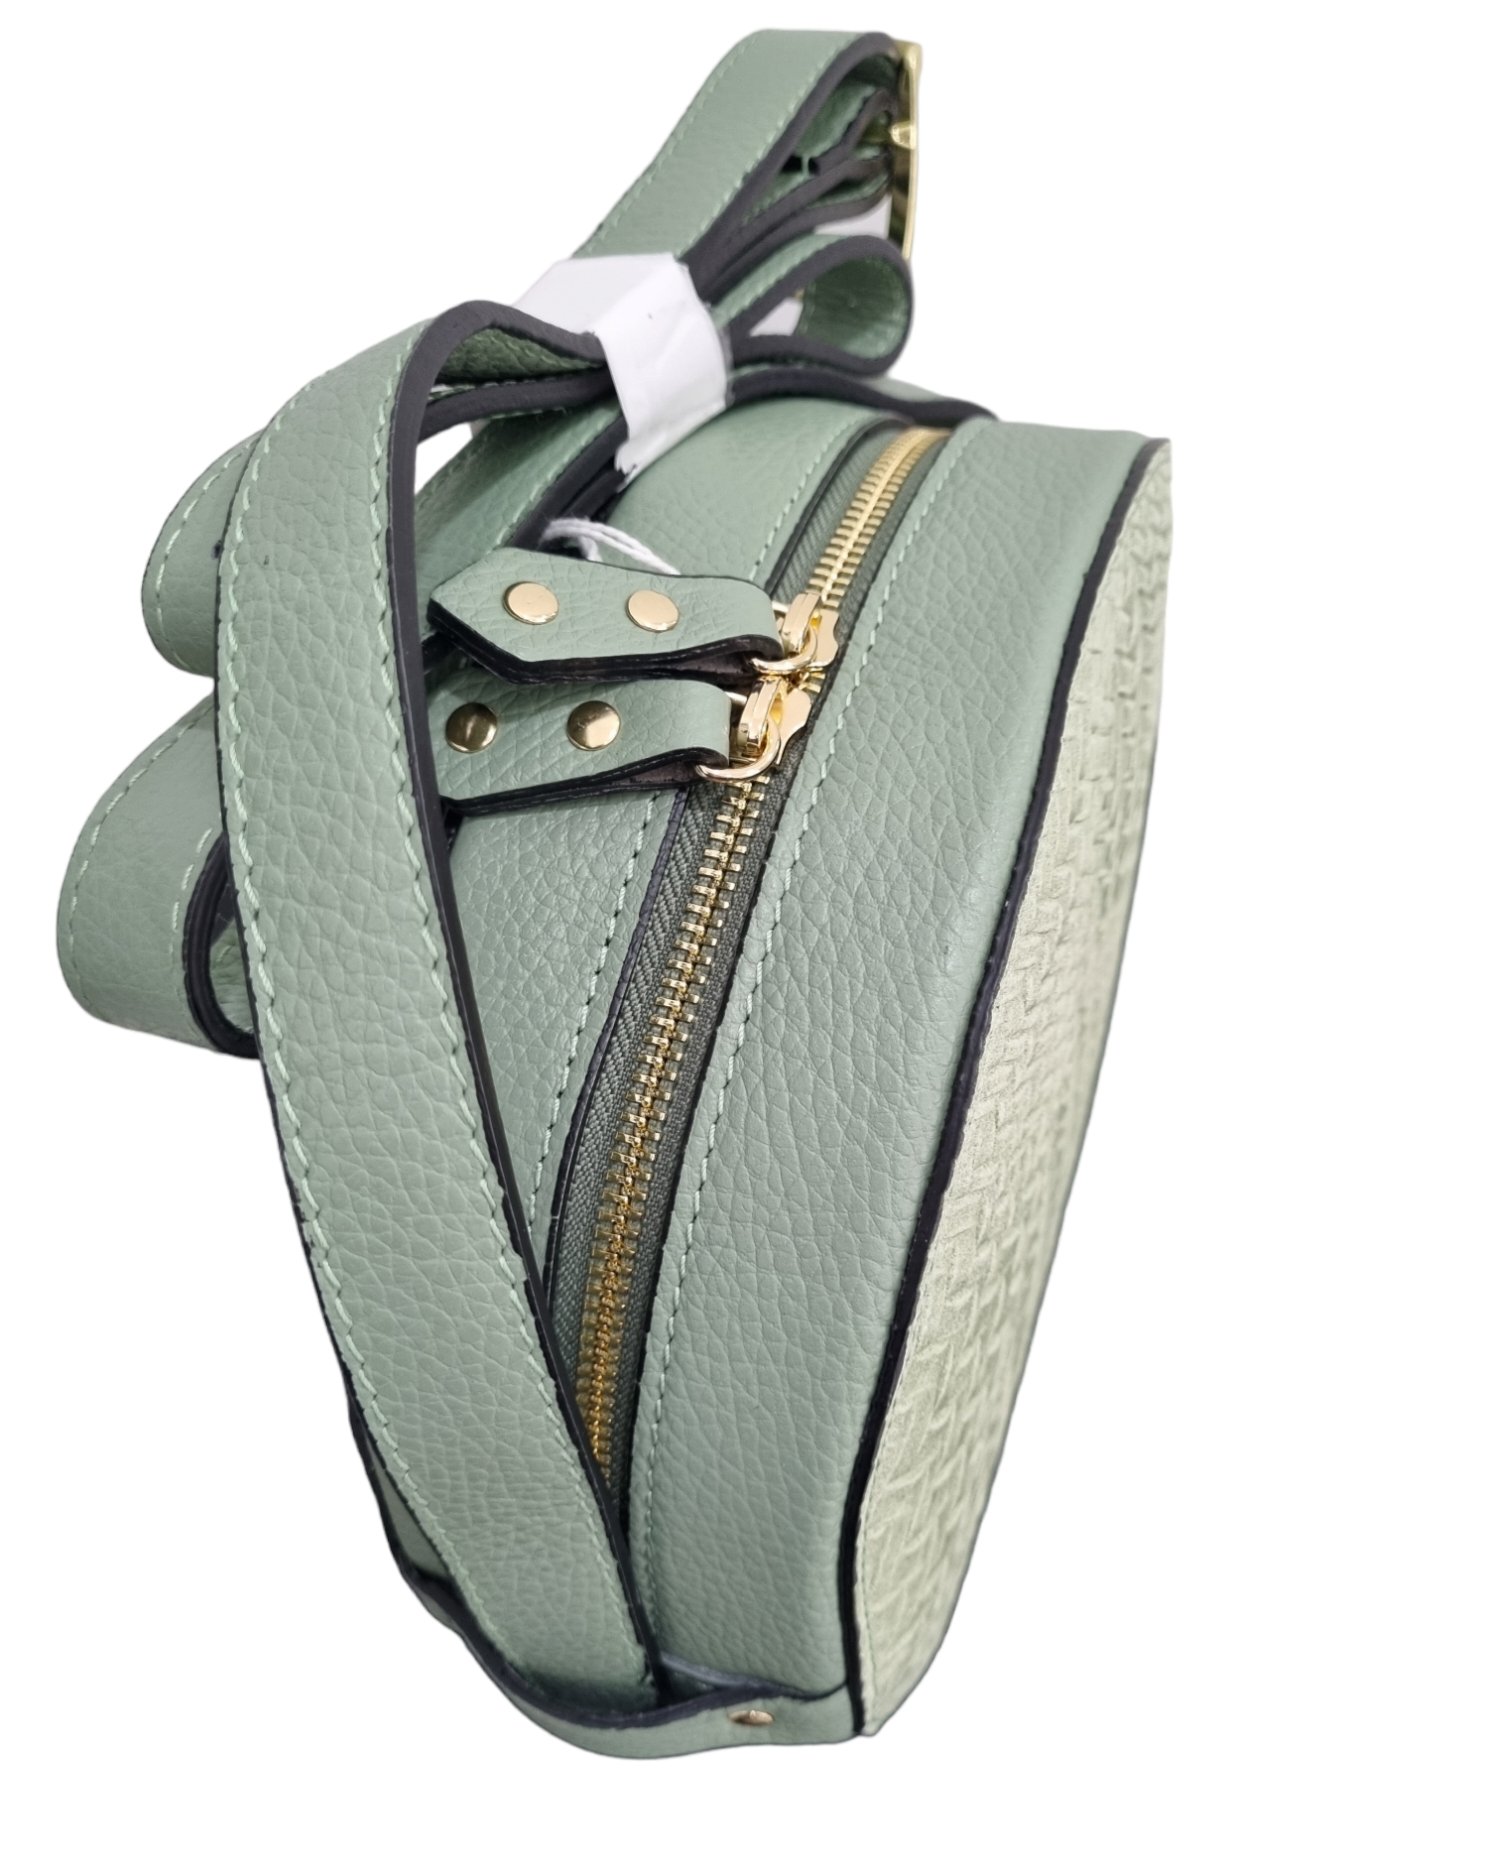 Umhängetasche aus echtem, auf der Vorder- und Rückseite gewebtem Leder, hergestellt in Italien, einzelnes Innenfach aus Wildleder, Reißverschlussöffnung. breiter verstellbarer Schultergurt. Salbeigrüne Farbe, Maße H21 B 7 L17/24